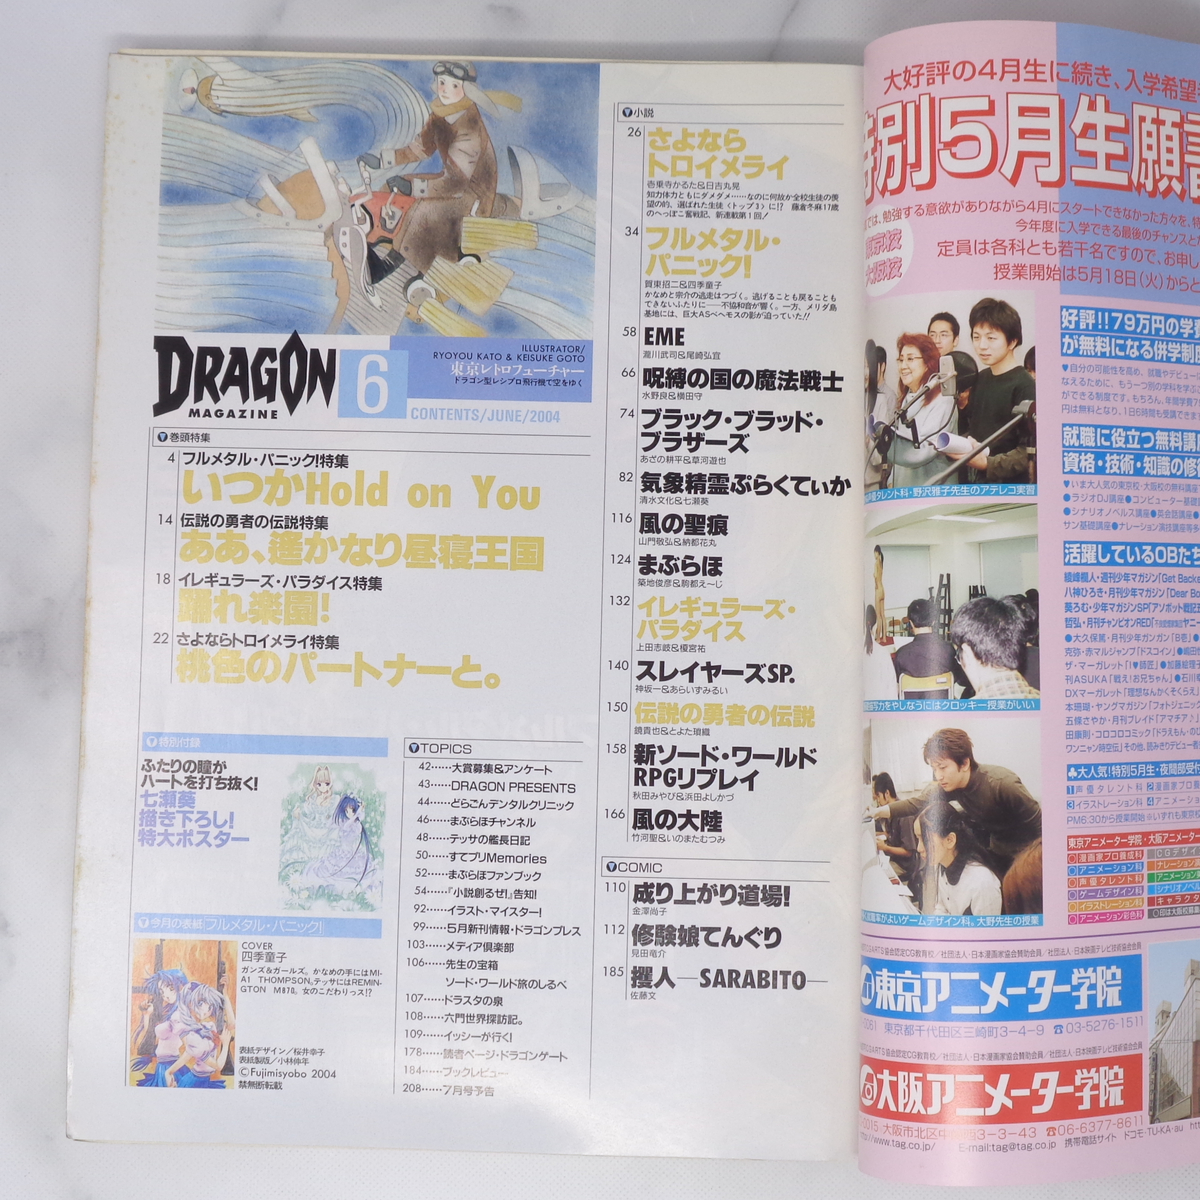  ежемесячный Dragon журнал DRAGON MAGAZINE 2004 год 5 месяц номер отдельный выпуск дополнение постер нет / full metal Panic /..../ журнал [Free Shipping]